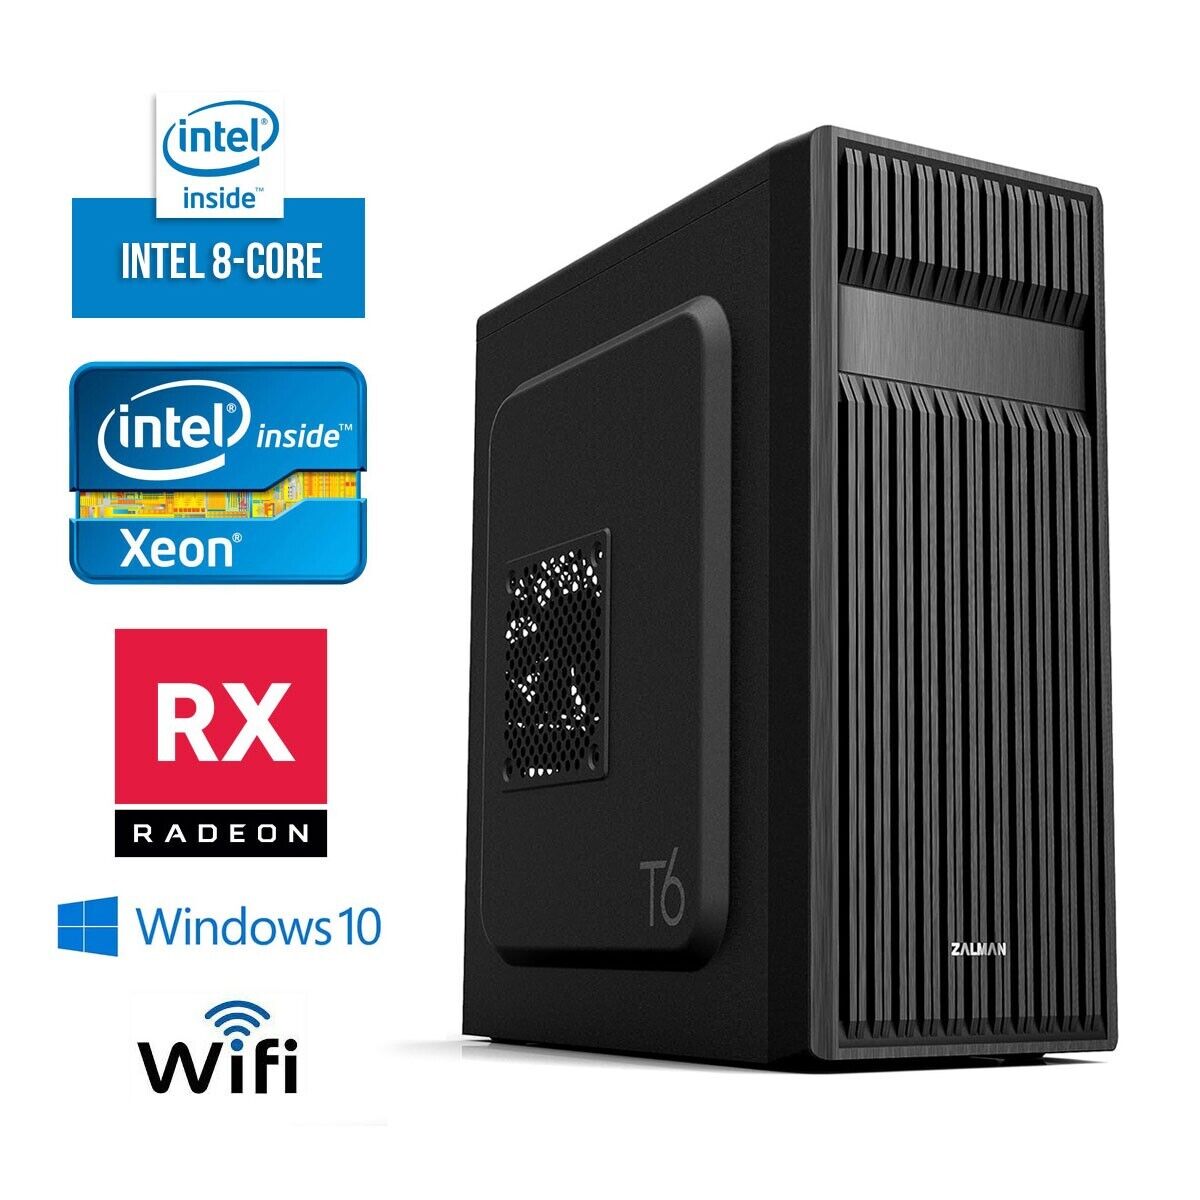 💰 Best Budget Gaming PC - Intel 8-CORE, RX 480, 16GB, 256GB SSD, WIFI, WIN 10